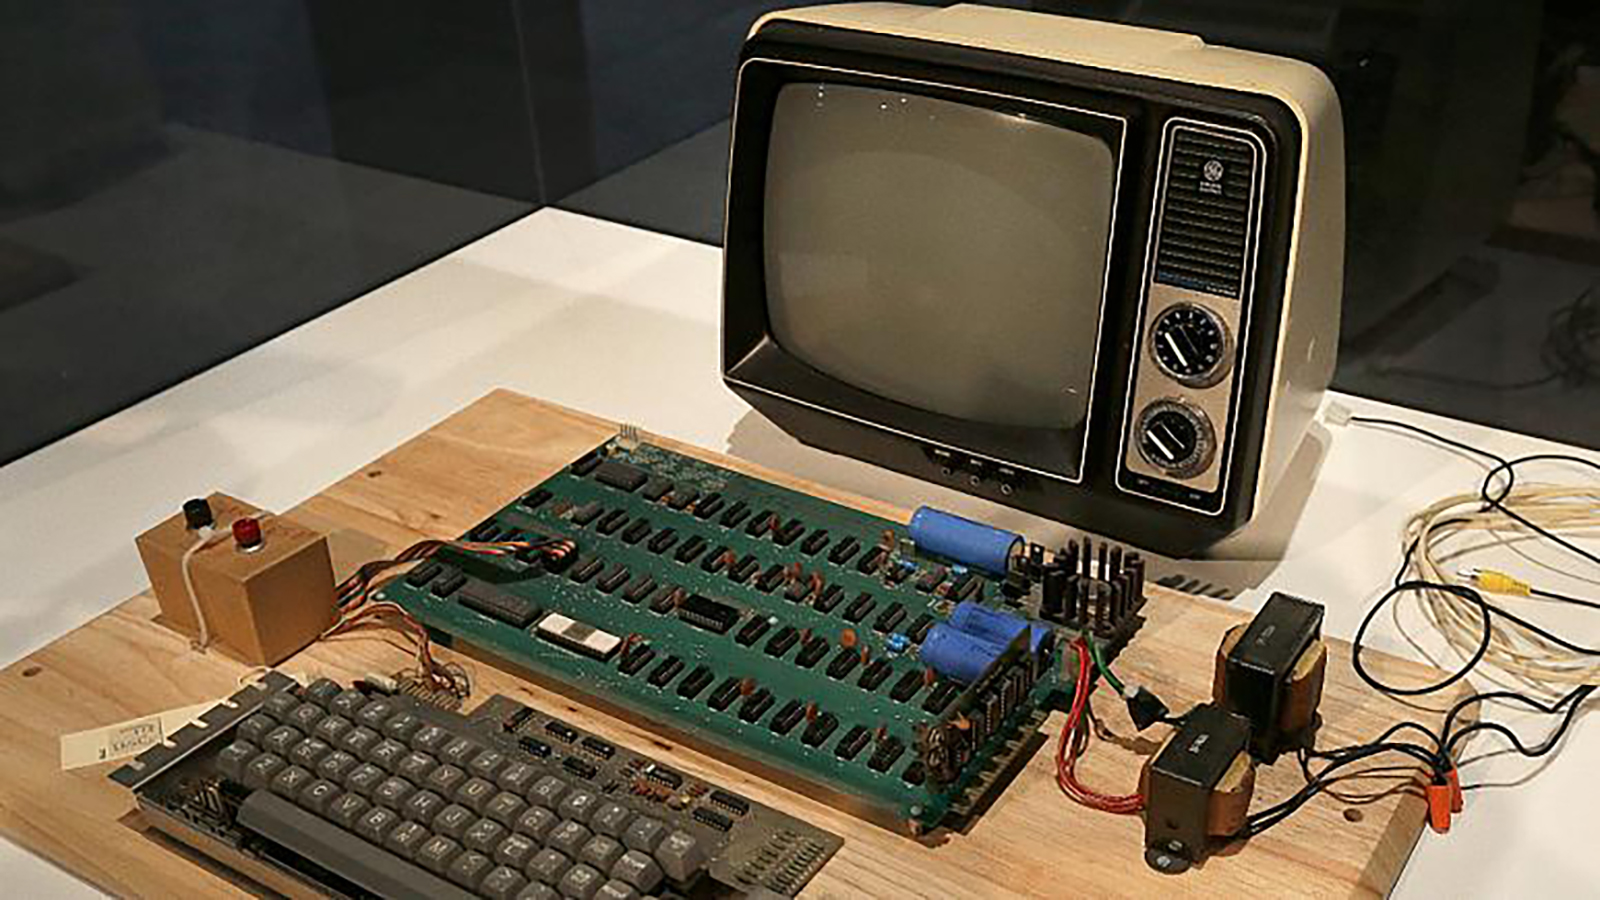    طرح نسخة من أول كمبيوتر لـ "أبل" للبيع في مزاد